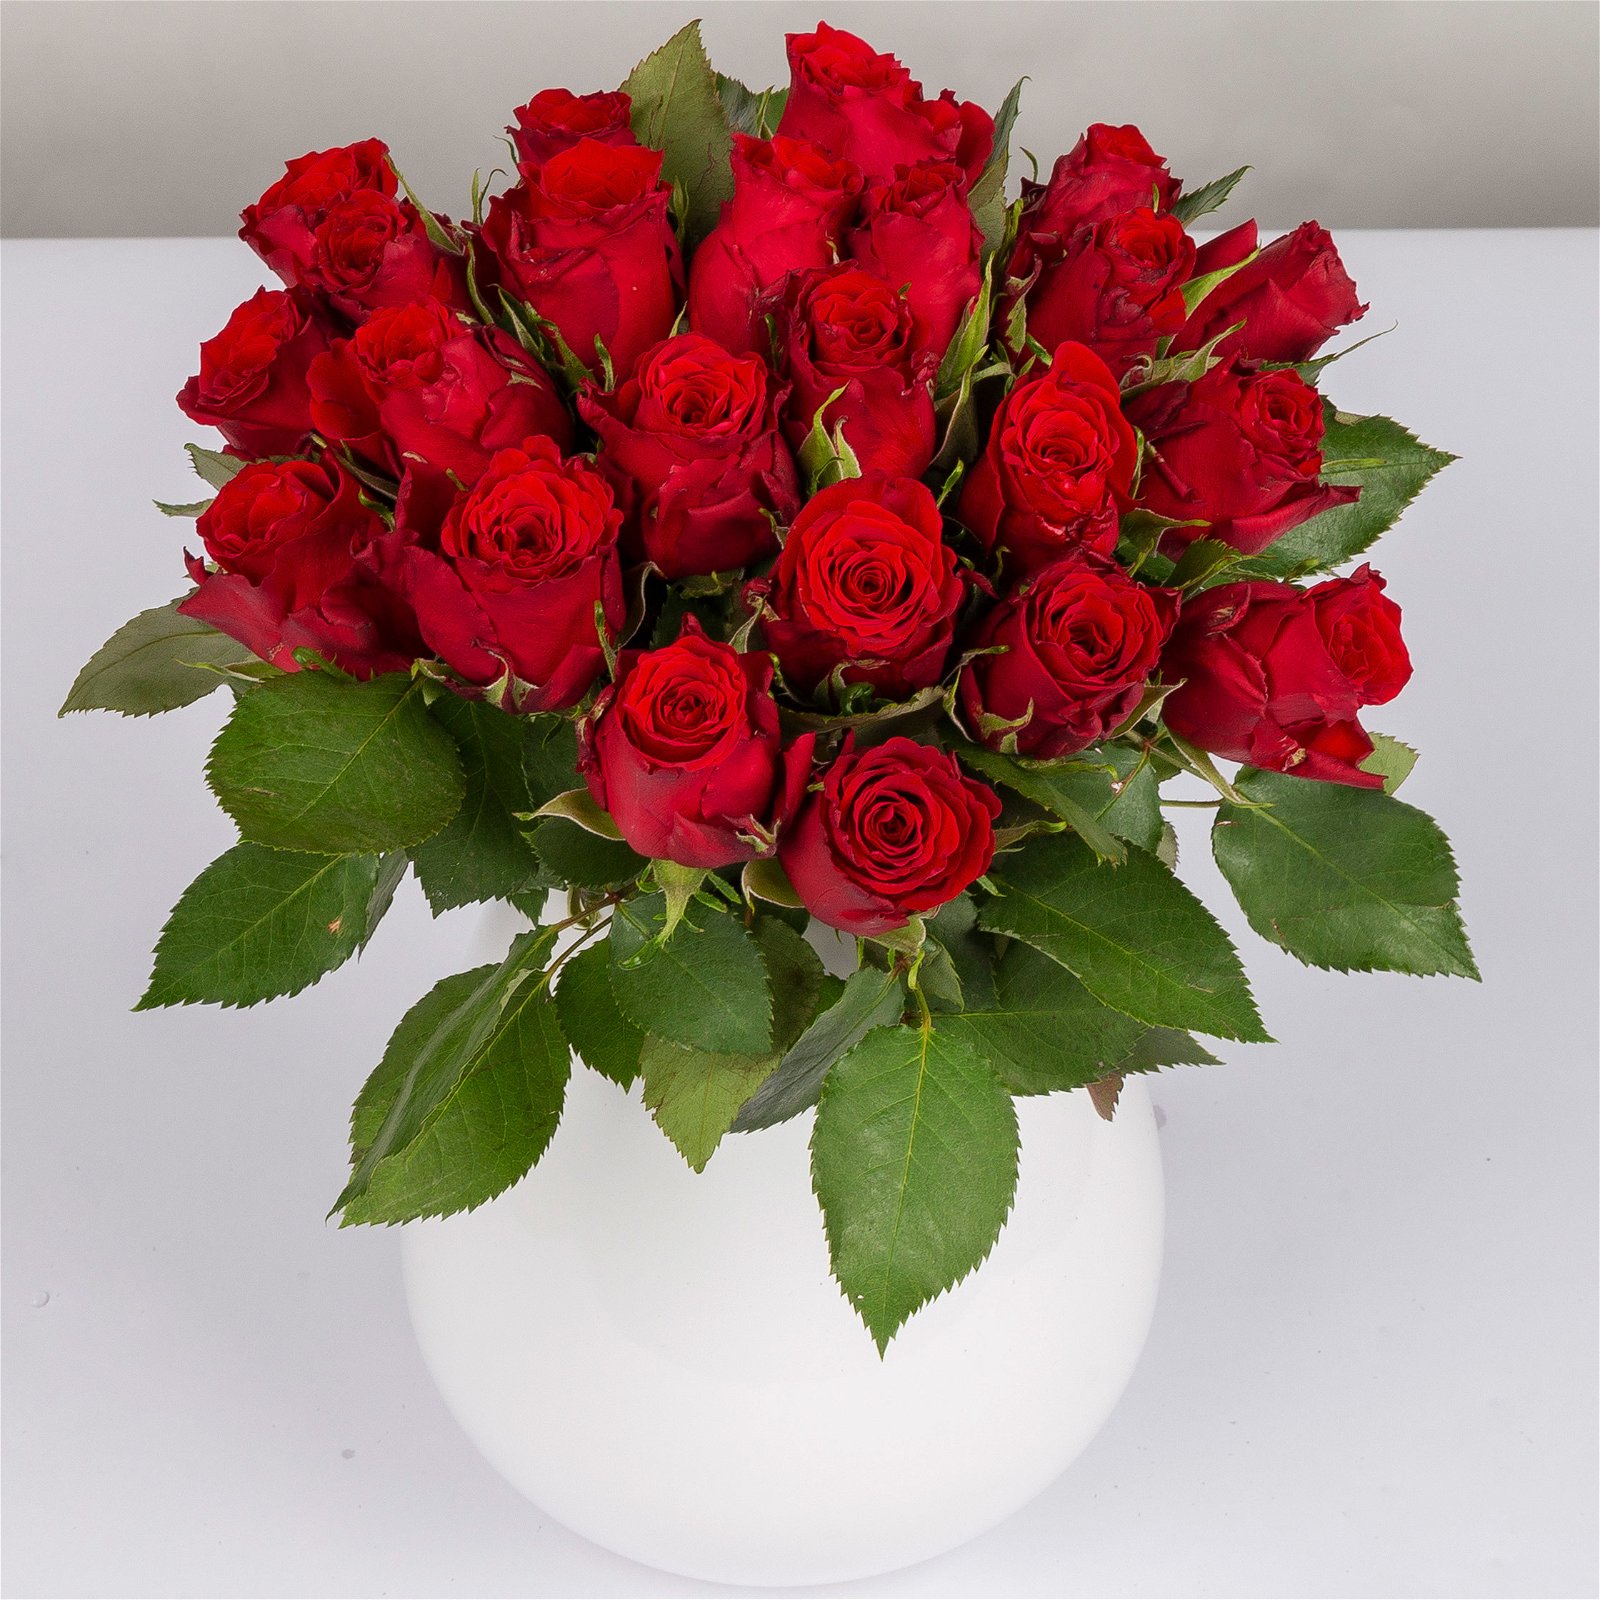 Blumenbund mit Rosen, 20er-Bund, rot, inkl. gratis Grußkarte